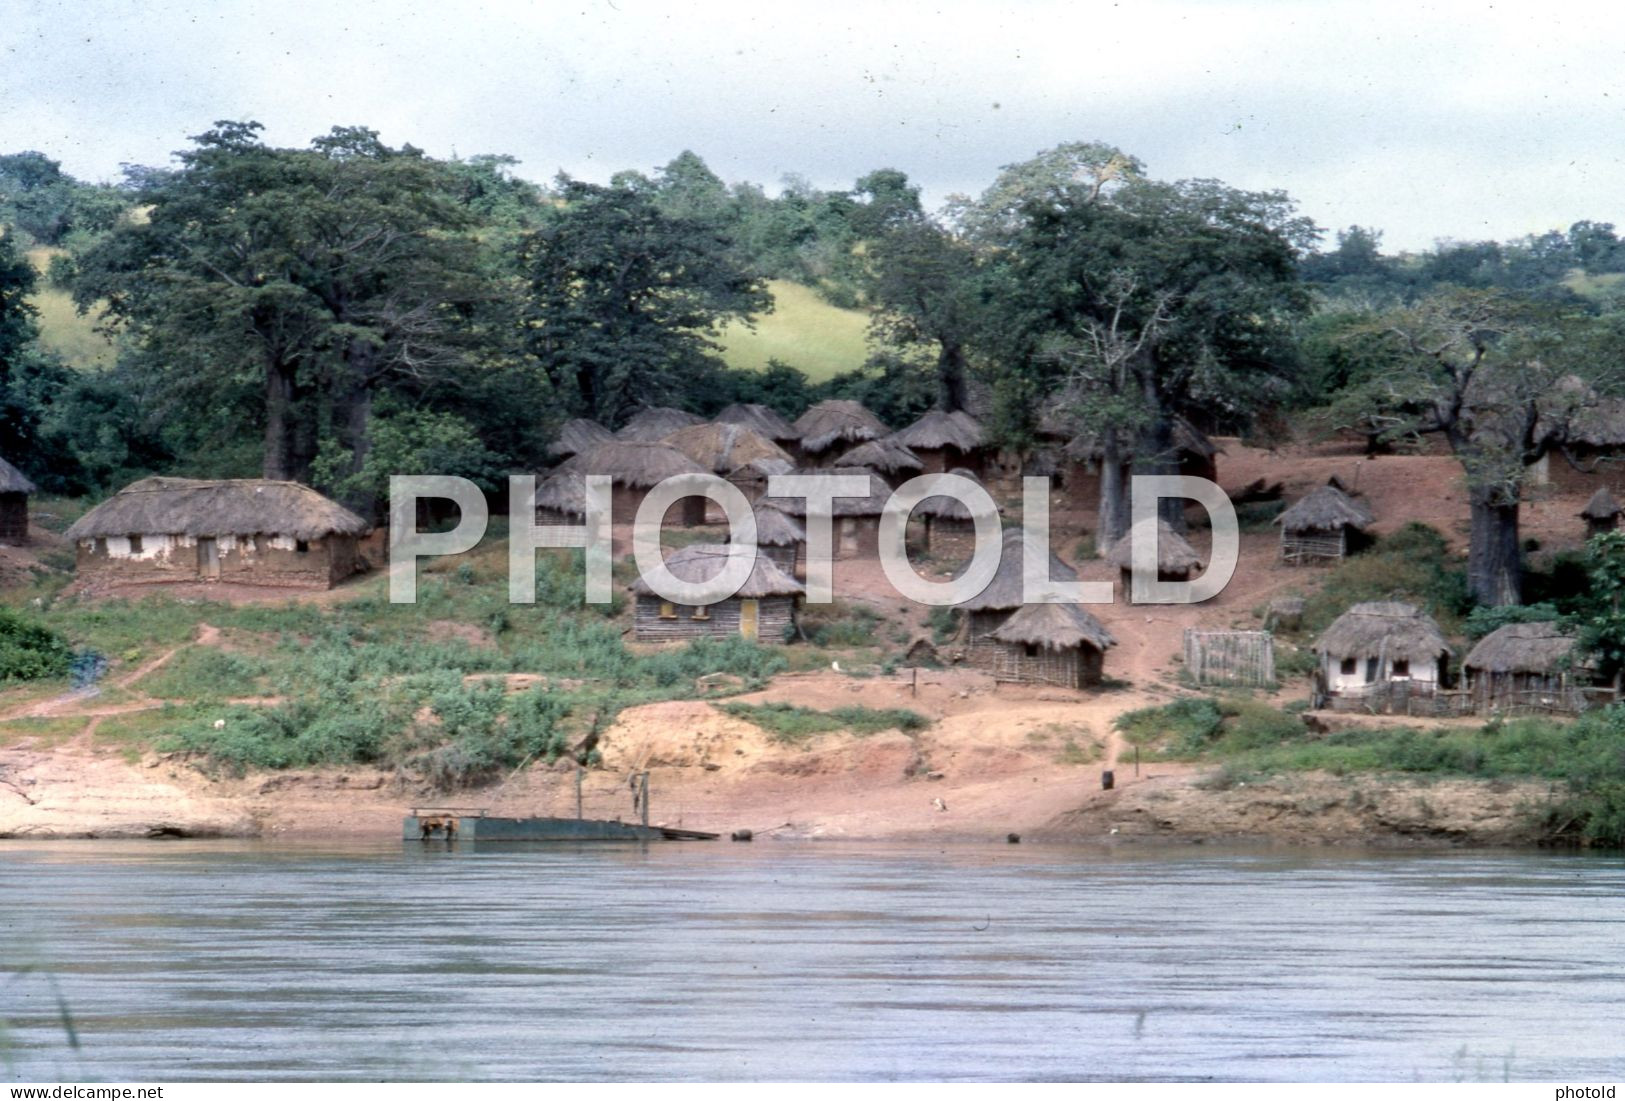 6 SLIDES SET 1966 LUANDA ANGOLA AFRICA AFRIQUE ORIGINAL AMATEUR 35mm DIAPOSITIVE SLIDE not PHOTO FOTO NB4050